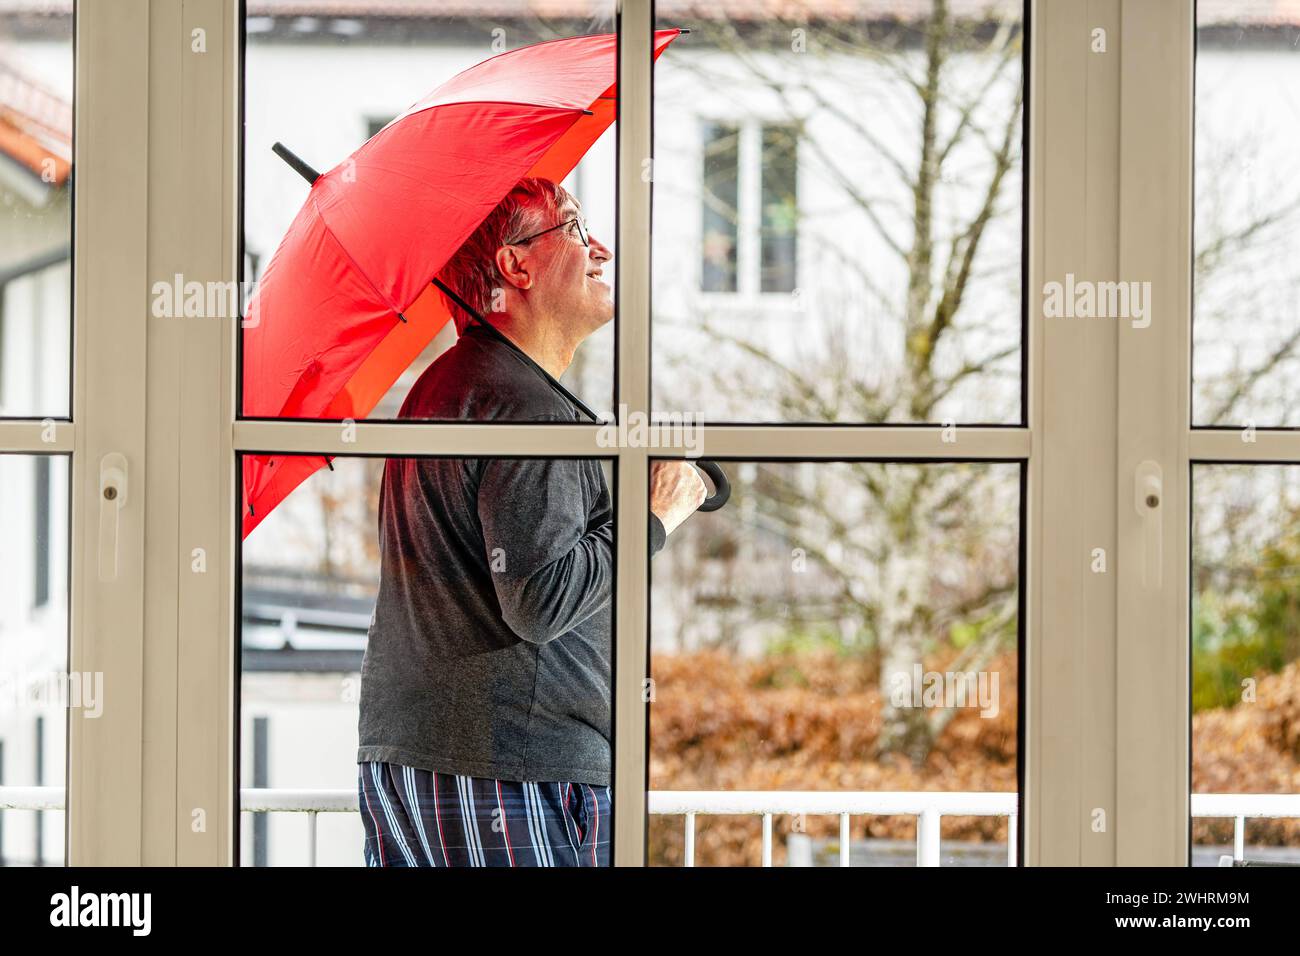 Regenwetter, Mann steht mit Regenschirm auf seinem Balkon, München, Februar 2024 Deutschland, München, Februar 2024, Regenwetter vorhergesagt, älterer Mann steht im Regen auf seinem Balkon, hat den Regenschirm aufgespannt und schaut skeptisch zum Himmel, fragt sich, ob er bei dem Mistwetter nicht gleich zuhause bleibt oder wieder ins Bett legt, schlechtes Wetter, Wochenende, Winter, Bayern *** Rainy weather, man stands with umbrella on his balcony, Munich, February 2024 Germany, Munich, February 2024, rainy weather forecast, elderly man stands in the rain on his balcony, has opened the umbrell Stock Photo